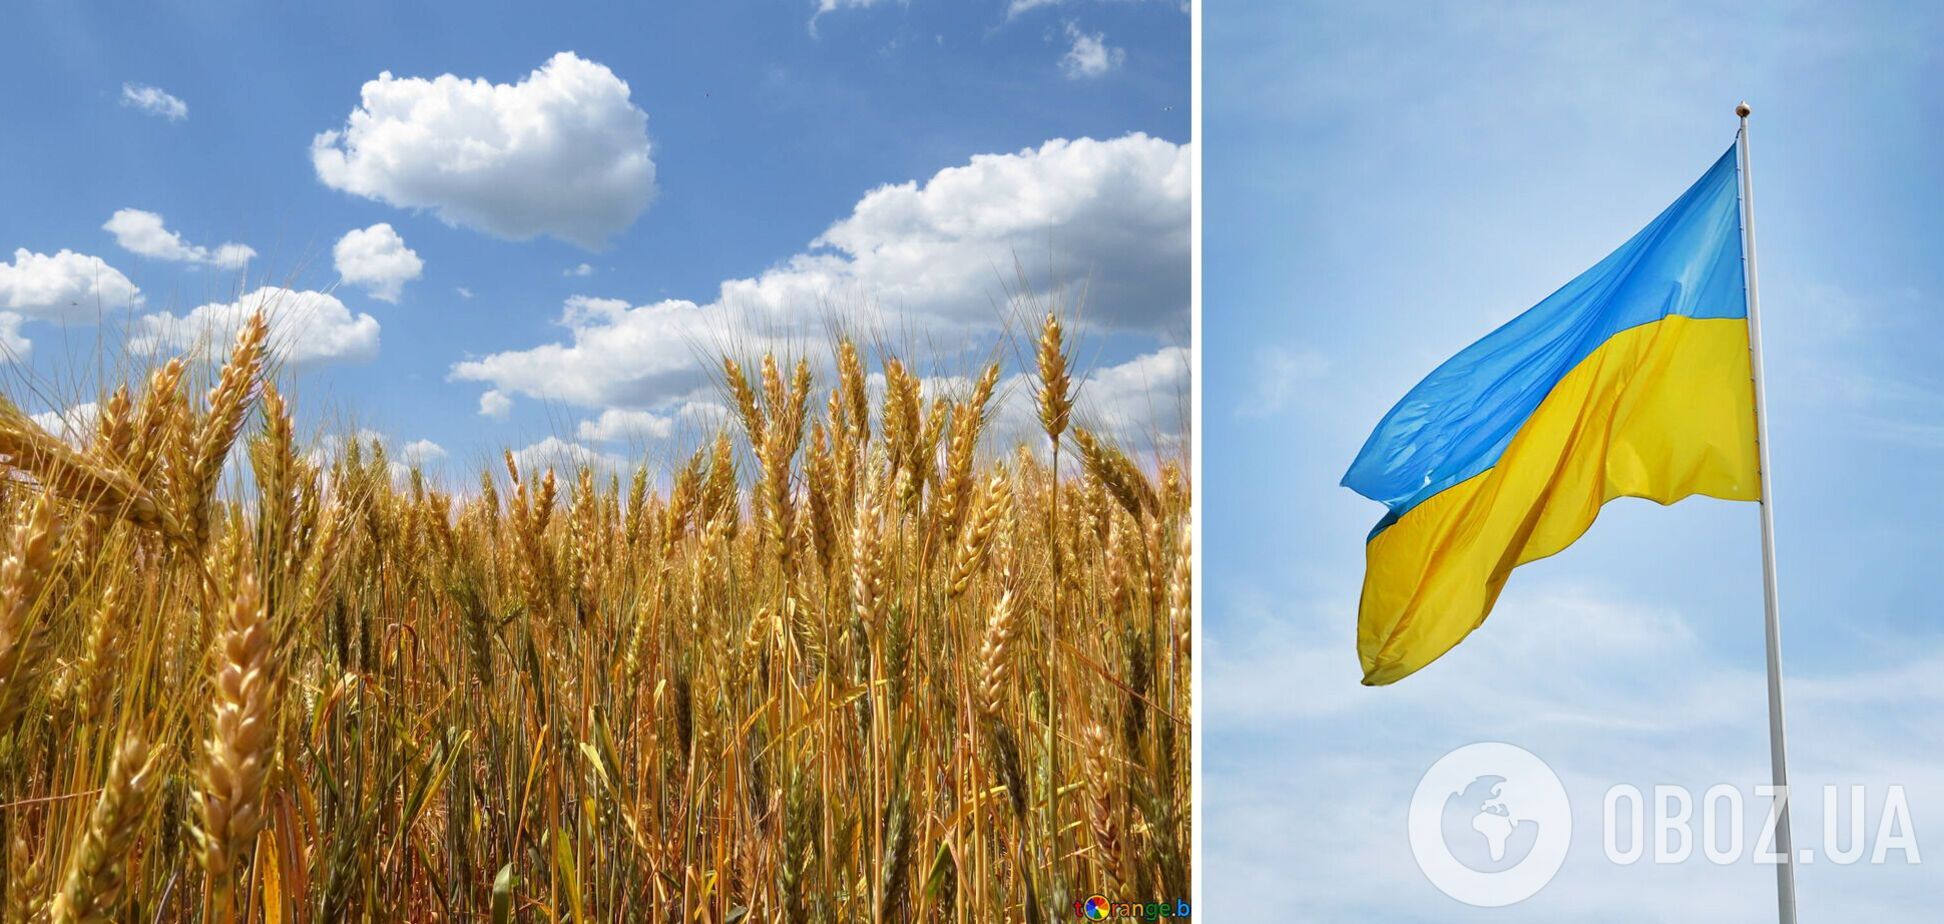 Очередной этап переговоров между Украиной и Россией по 'зерновой сделке' запланирован на 3 мая